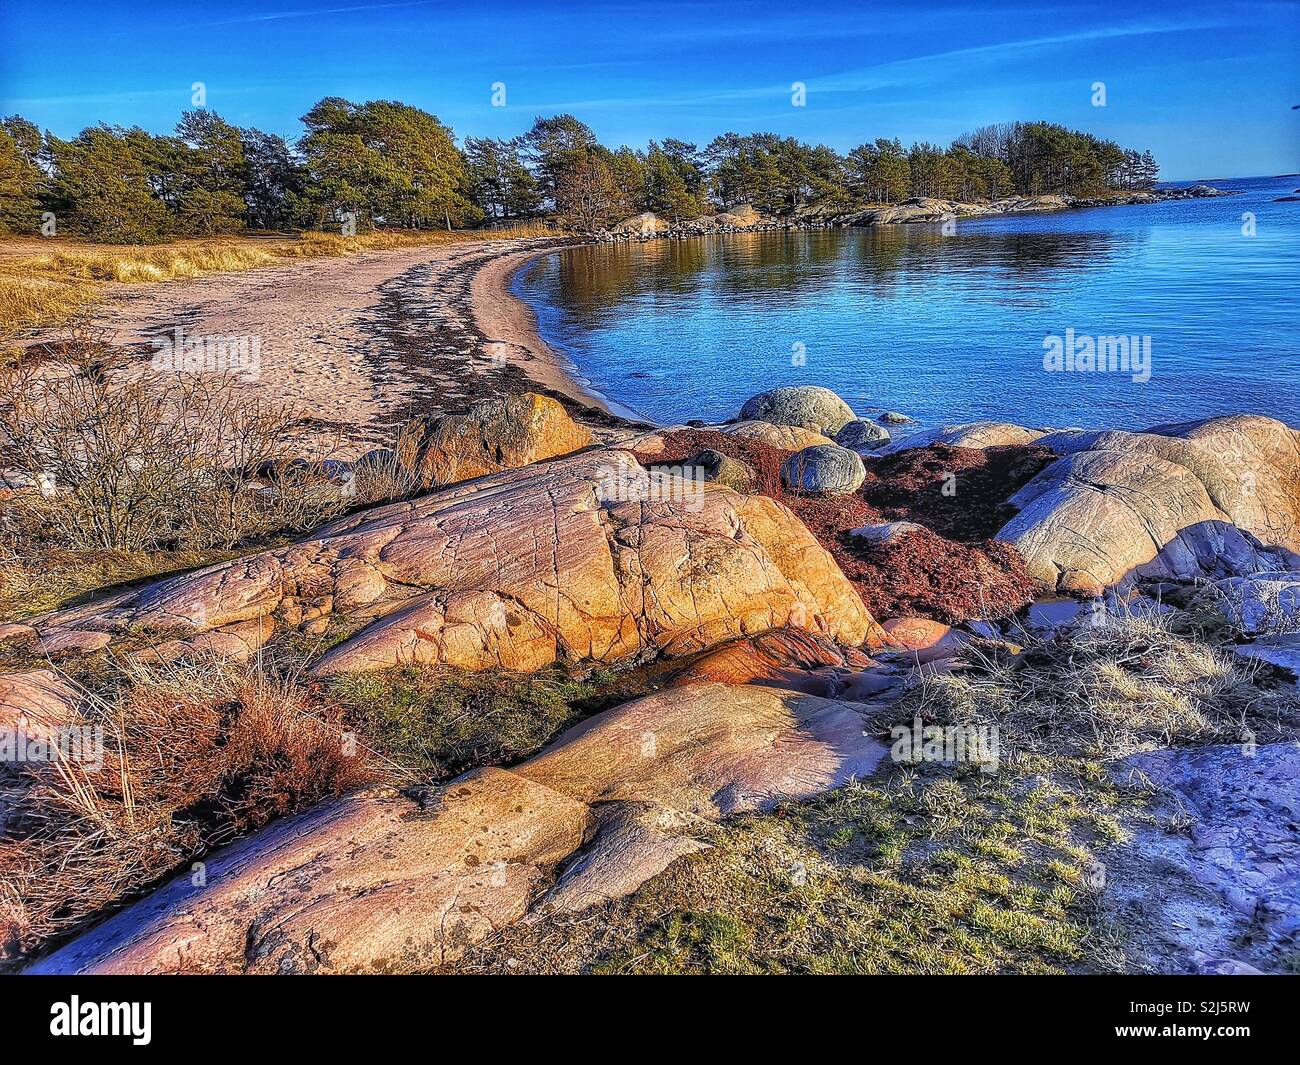 Trouville Strand, Sandhamn, Stockholmer Schären, Schweden, Skandinavien. Insel in den äußeren Schären beliebt für seine schroffen Klippen und Strände Stockfoto